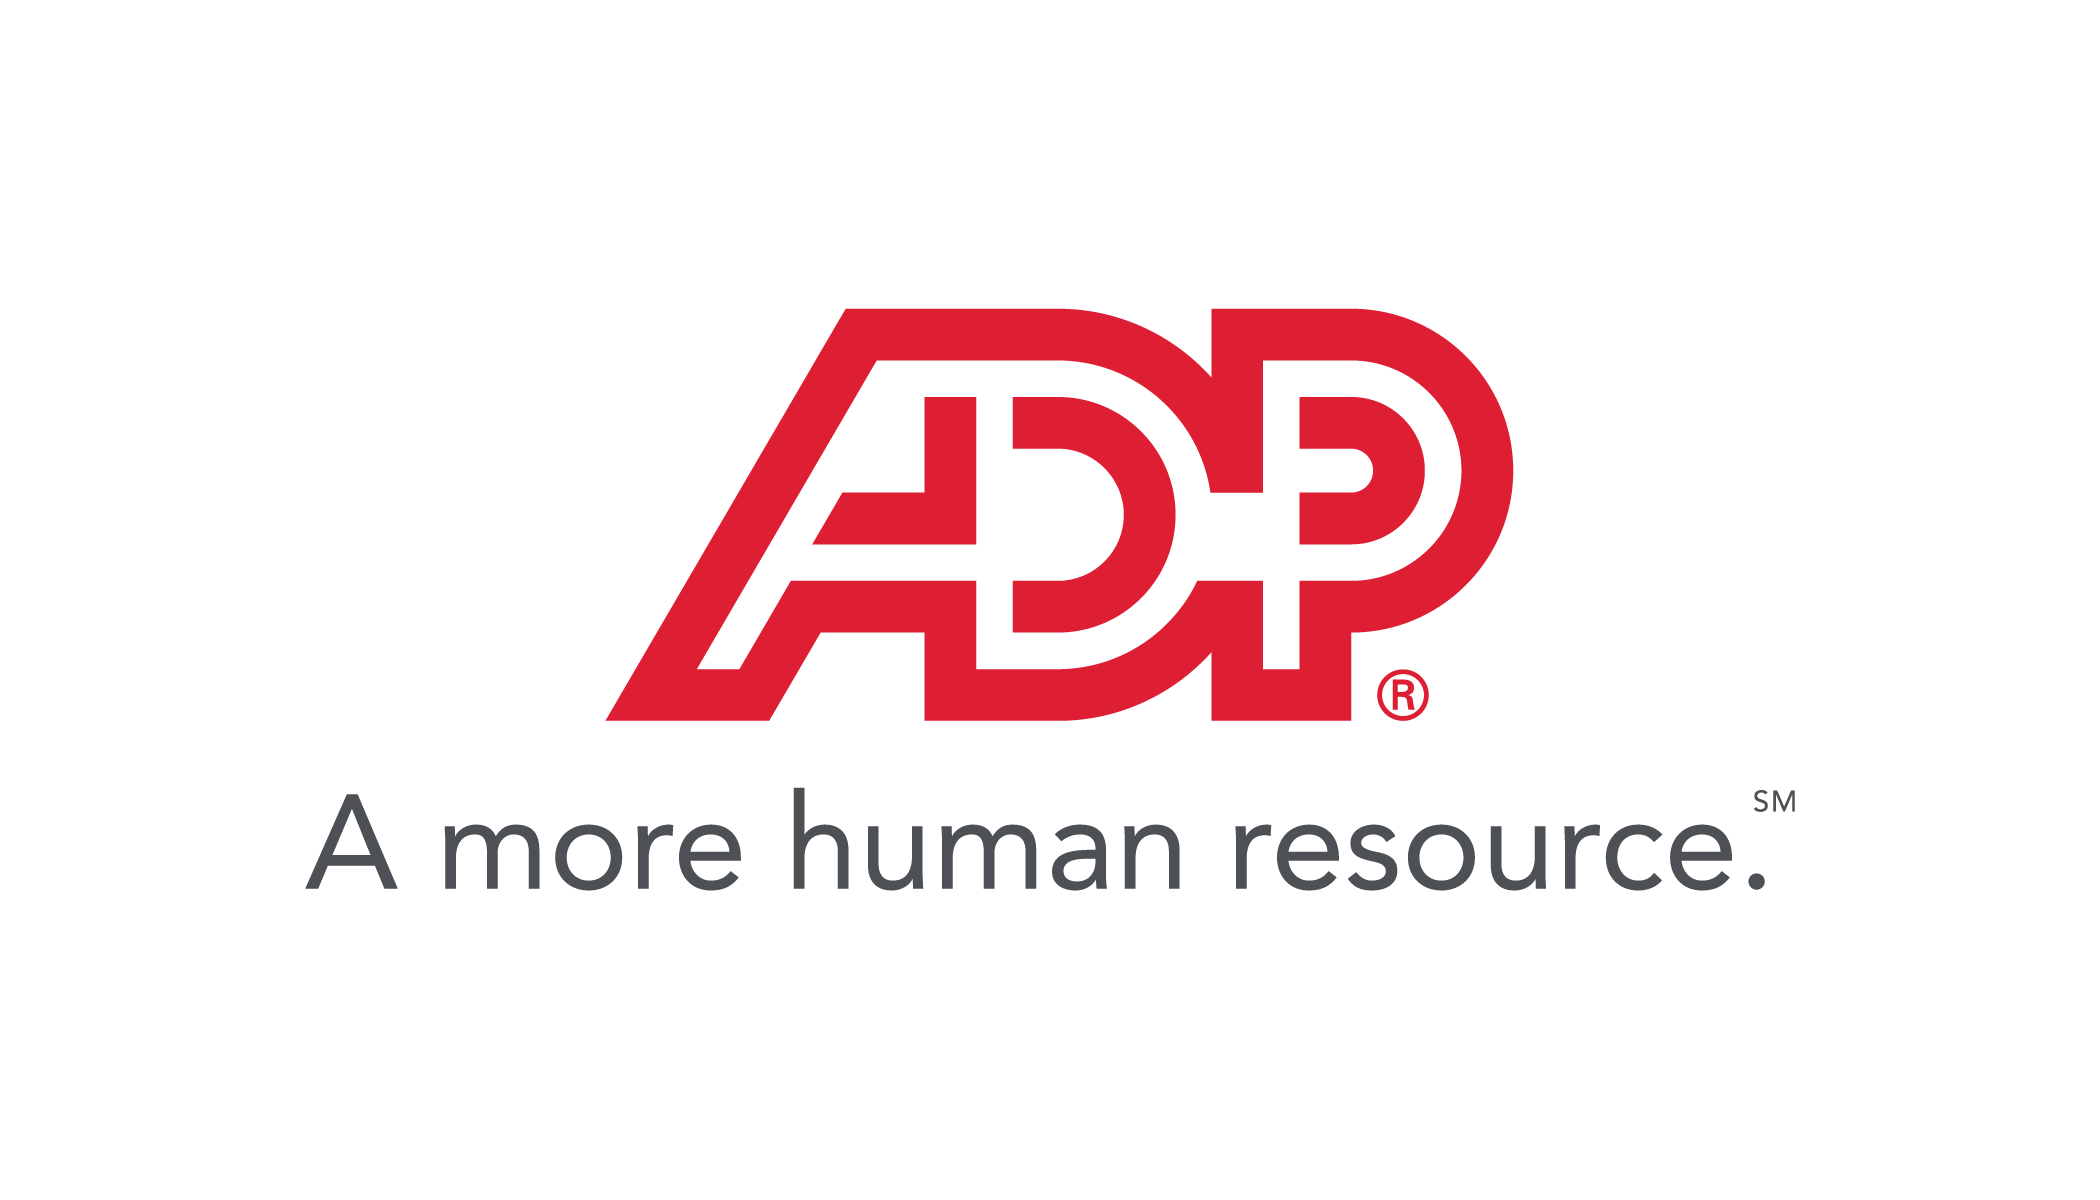 Adp Png Logo - Free Transparent PNG Logos